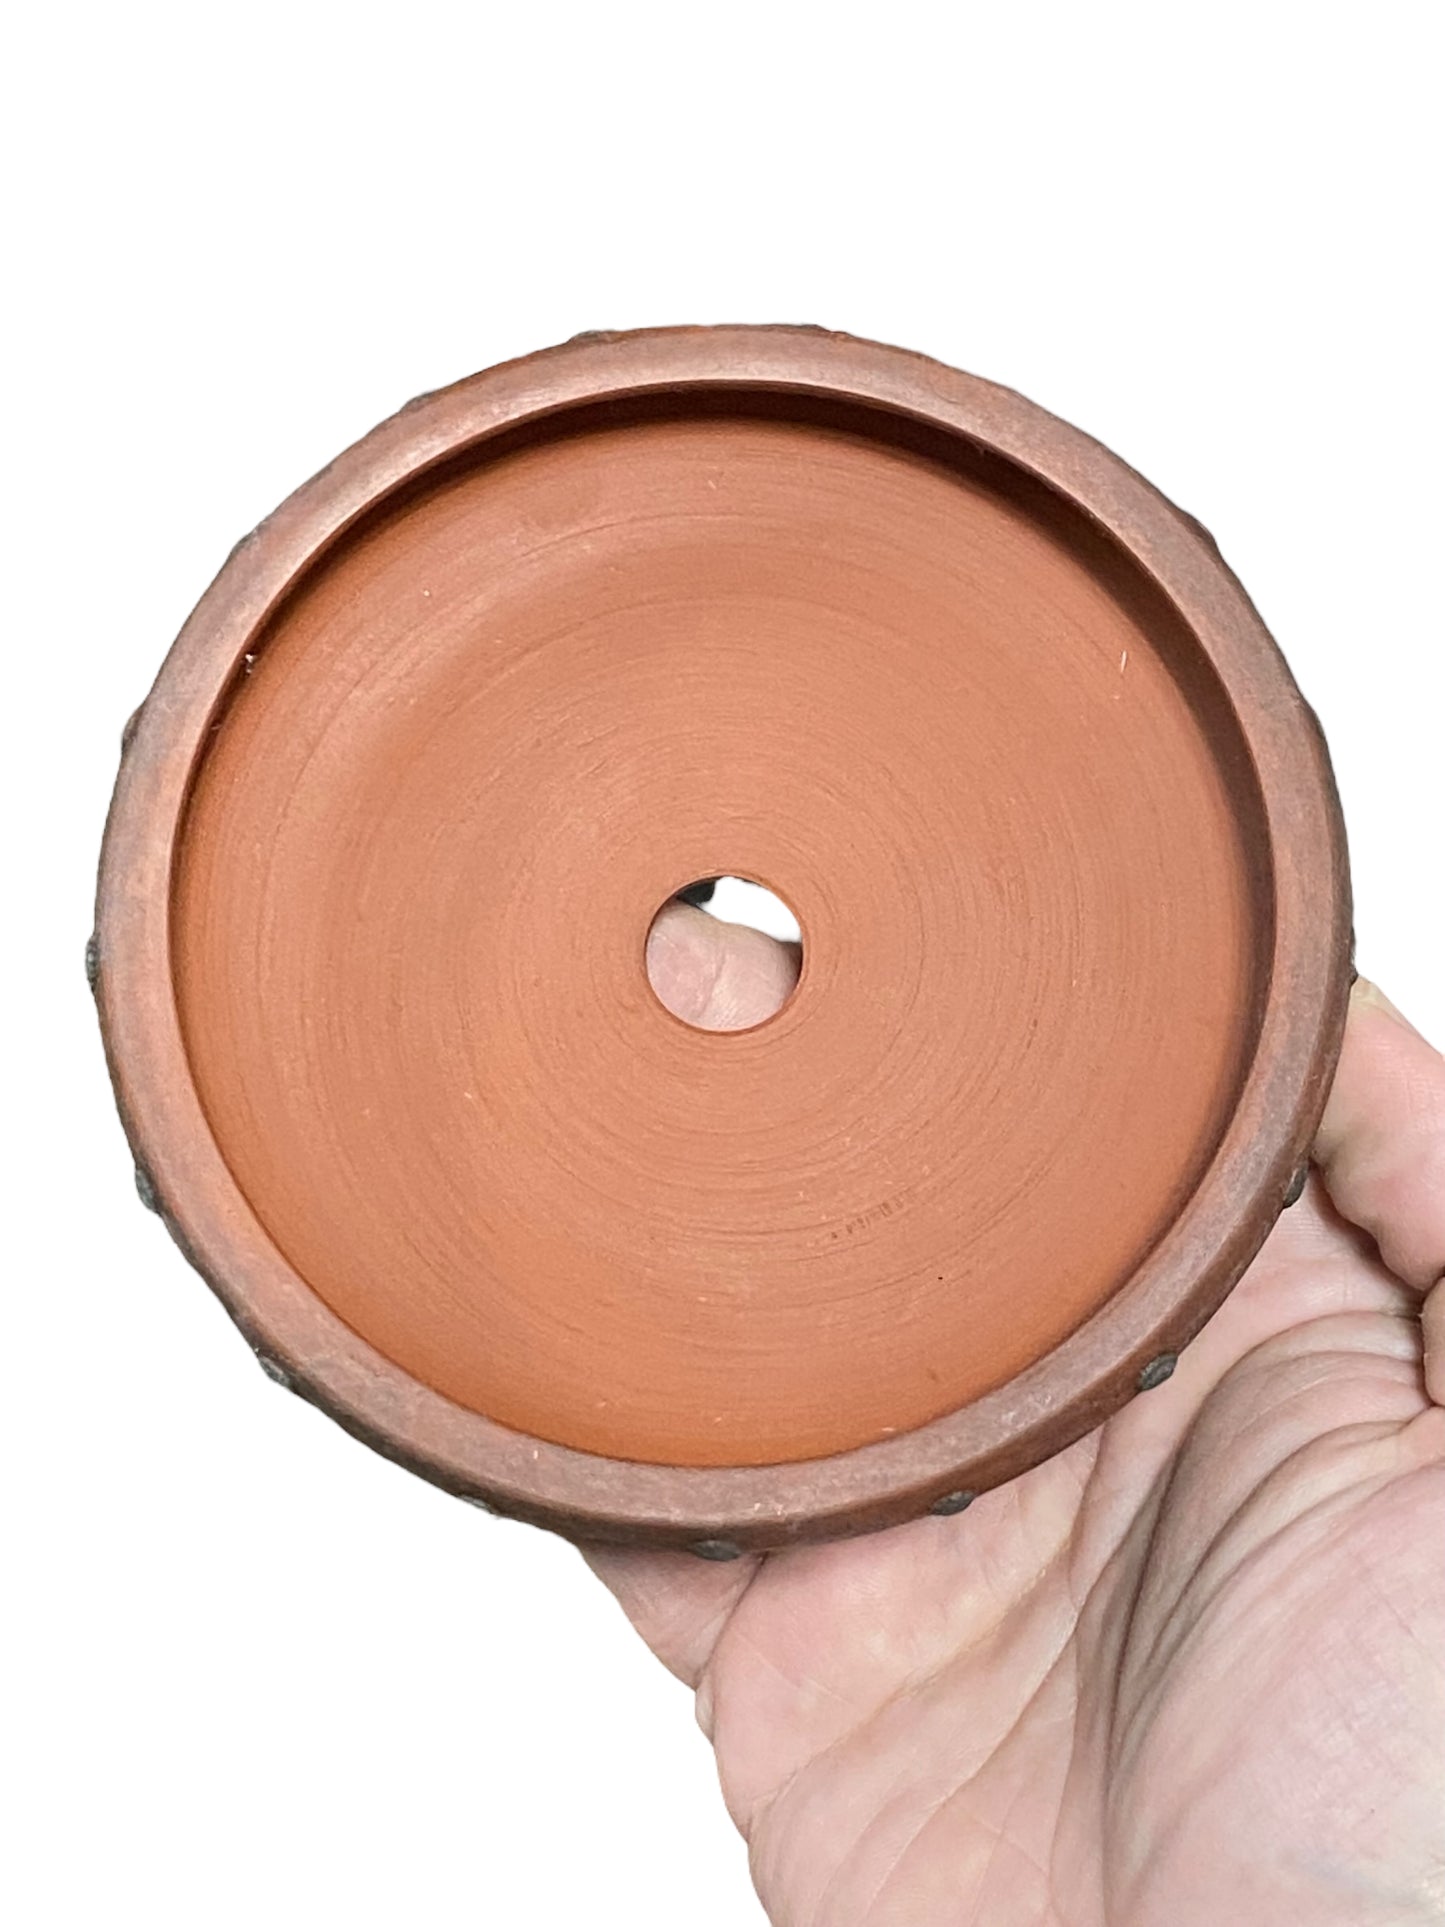 Ittoen - Quite Old Riveted Drum Style Bonsai Pot